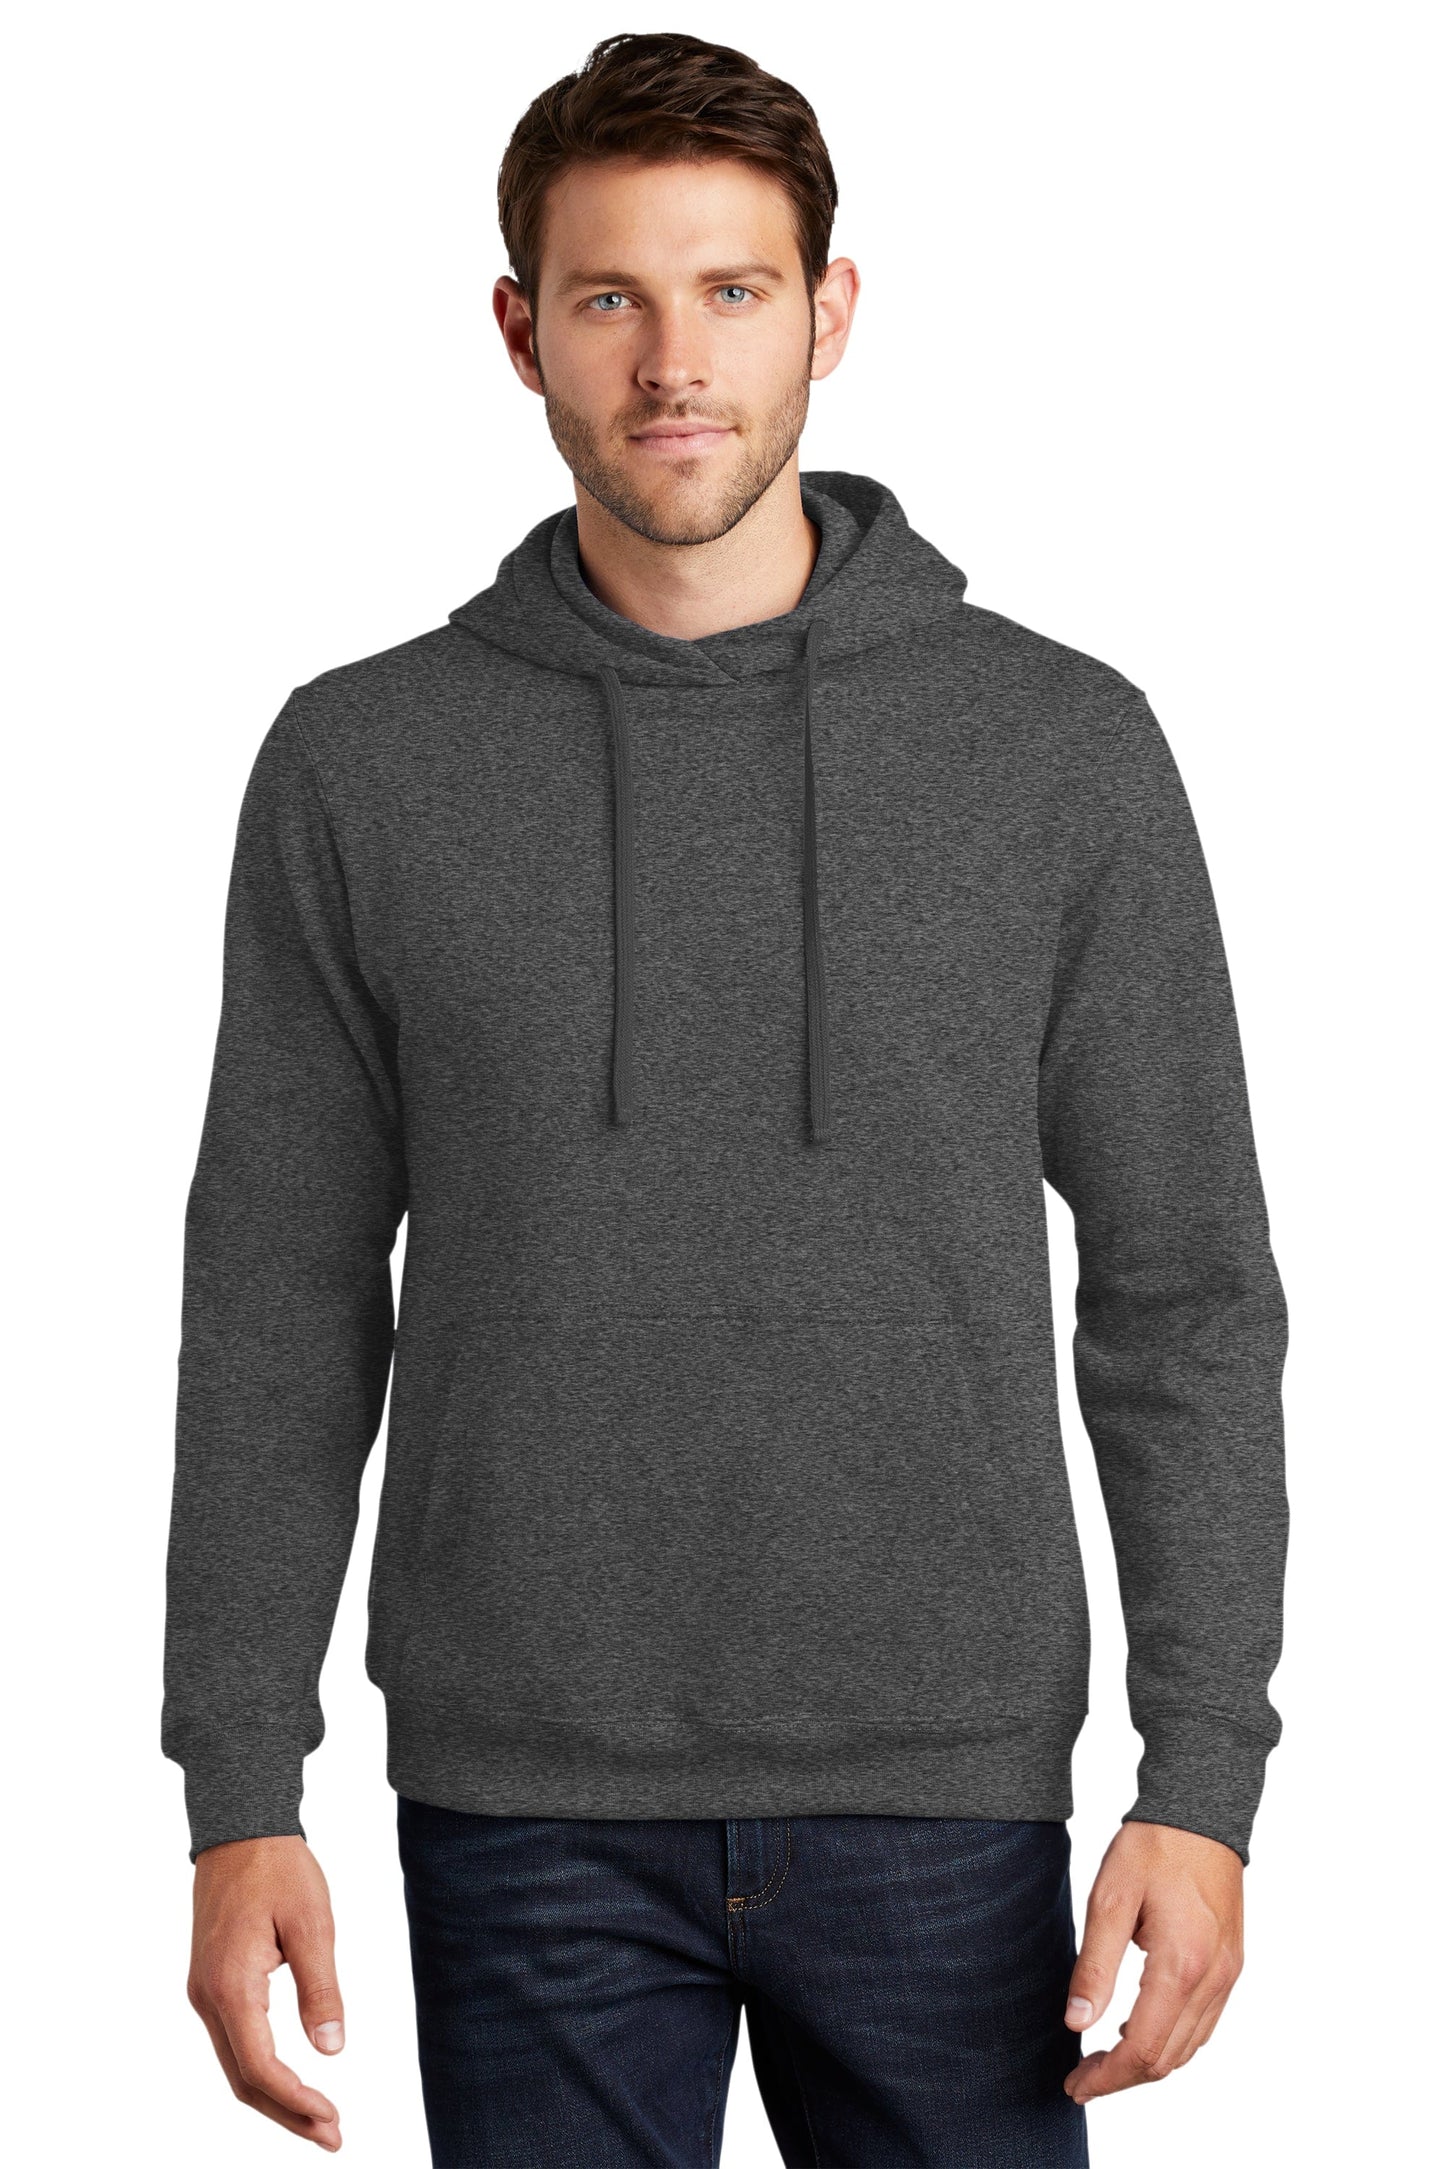 Short Men's Premium Fleece Pullover Hoodie Sweatshirt - Navy